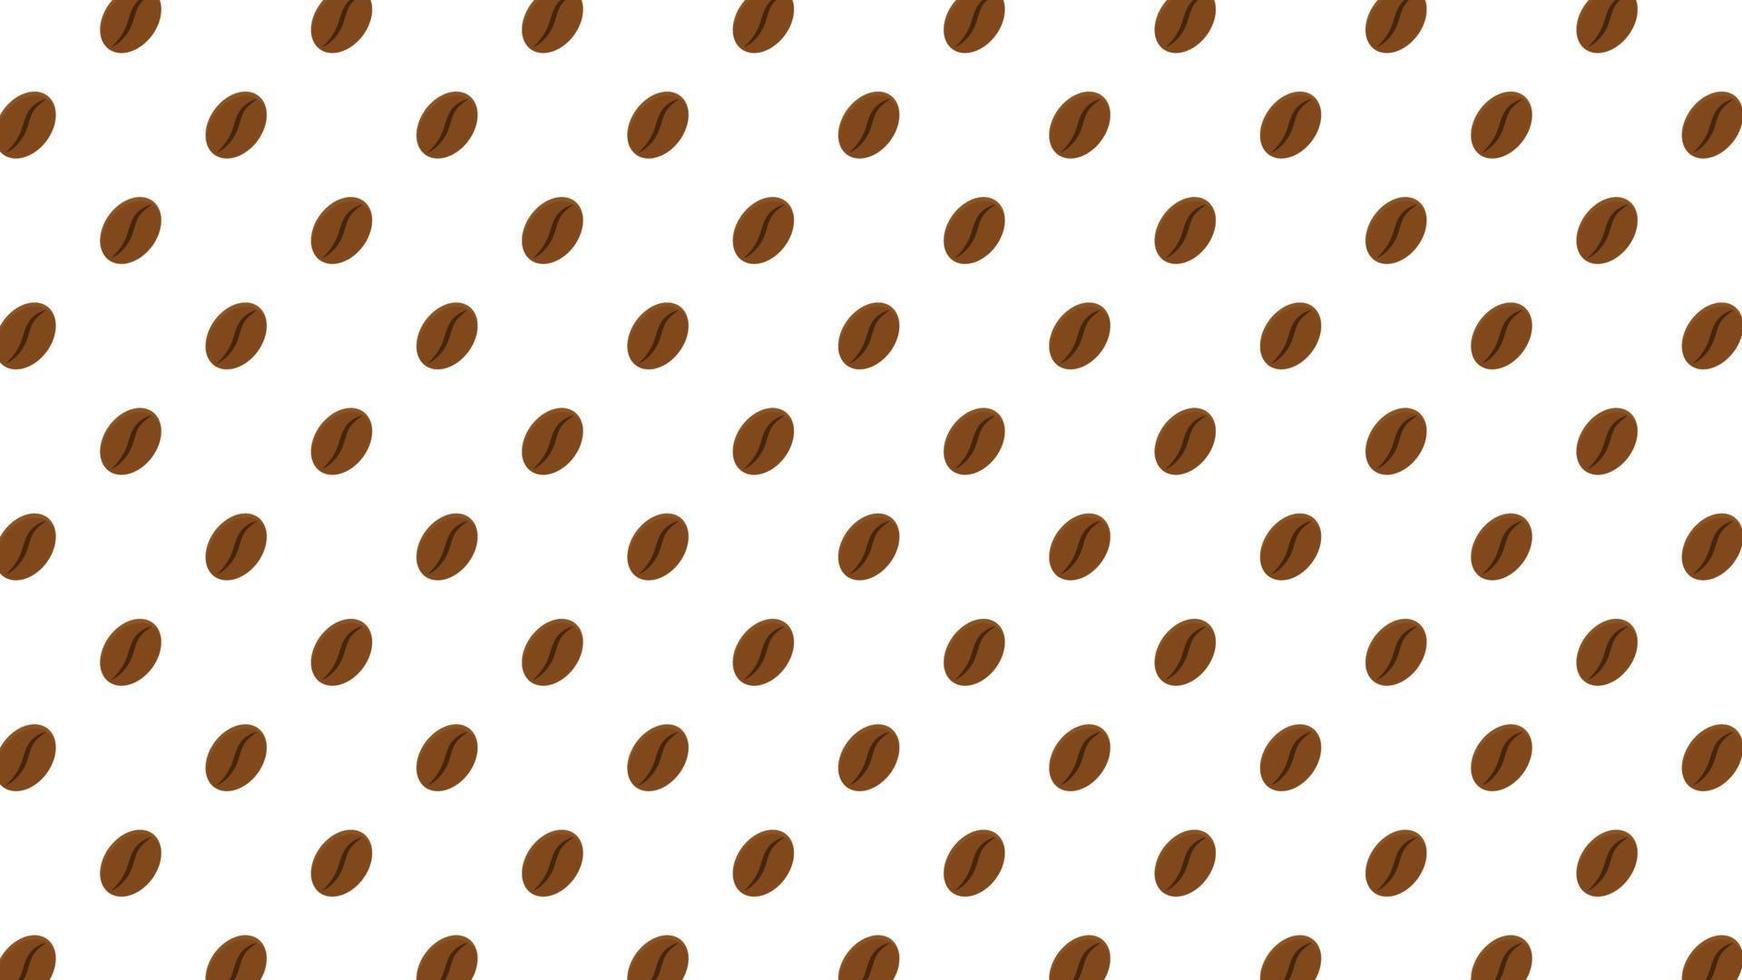 motif de grains de café pour café. modèle sans couture de vecteur avec des grains de café sur fond beige dans un style rétro.